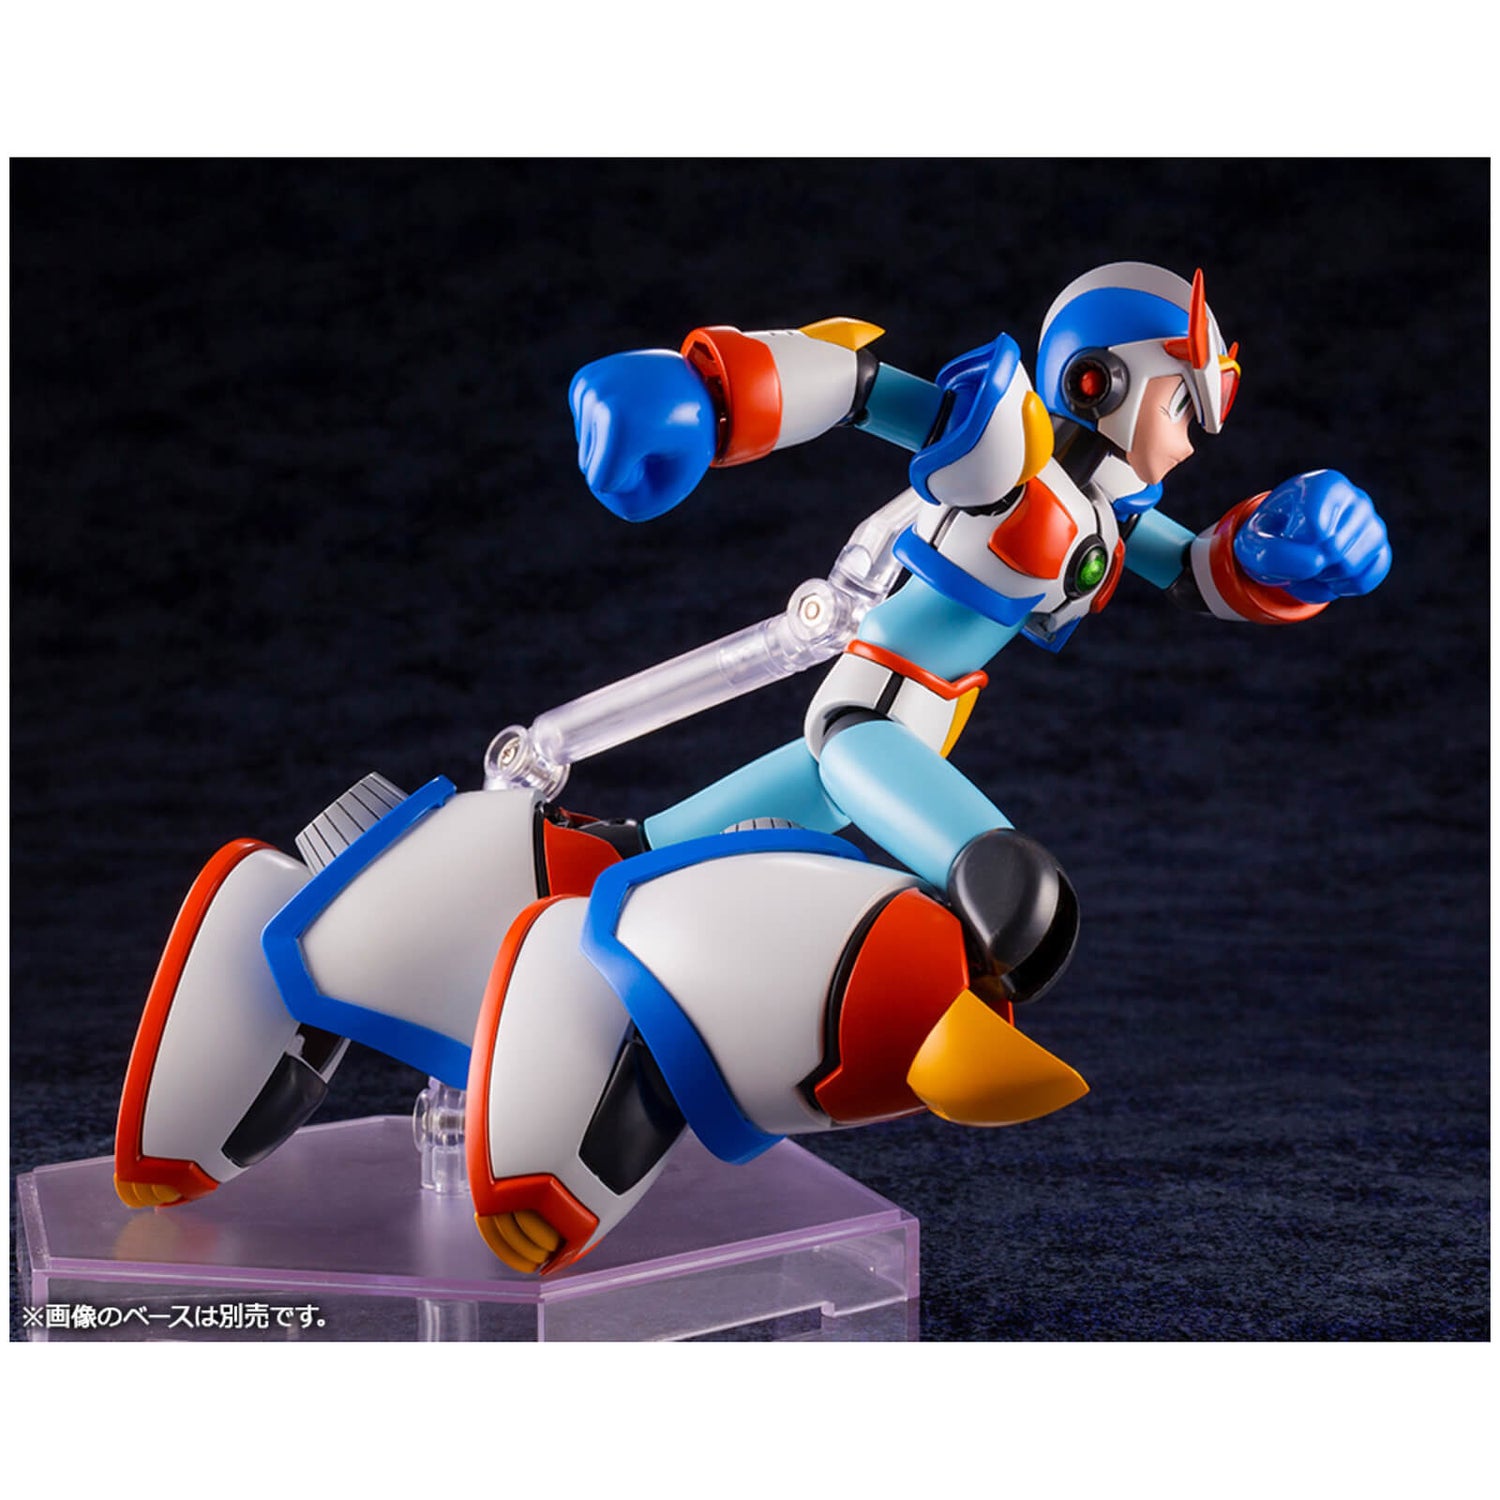 Kotobukiya Mega Man X Plastic Model Kit - X (Max Armor)